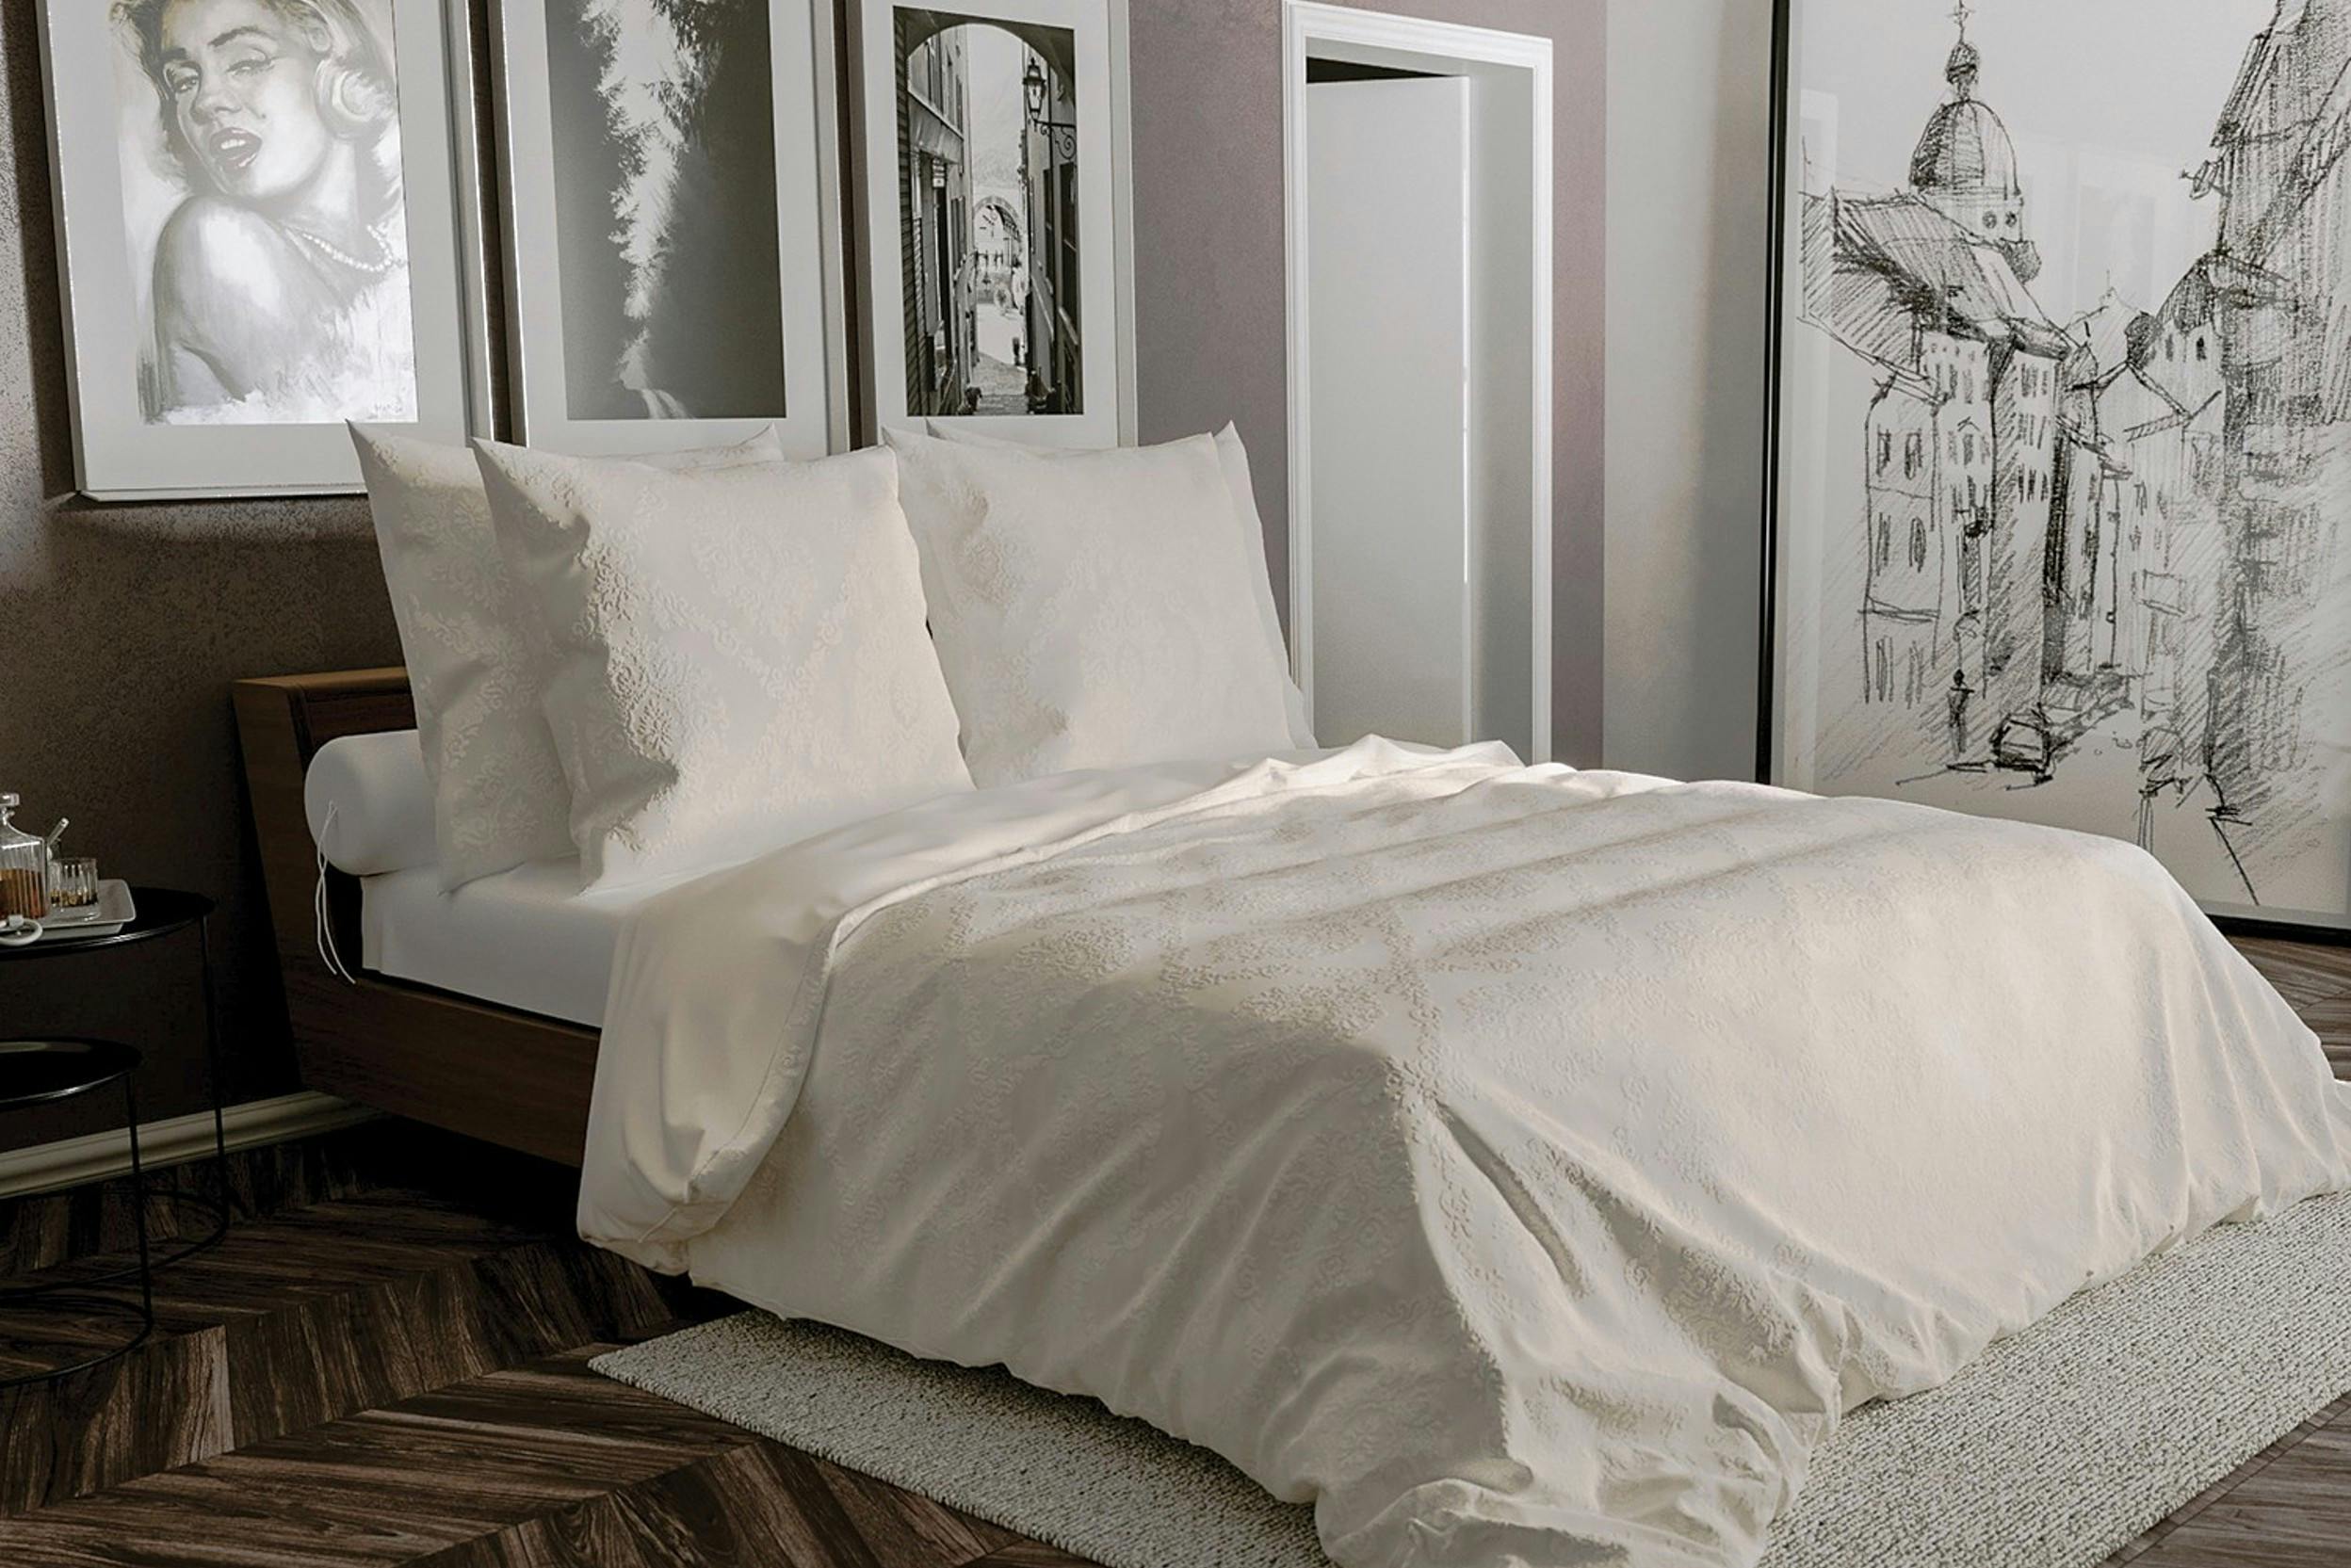 Cremefarbene Bettwäsche mit Brokatmuster in einem Zimmer mit vielen schwarz-weißen Kunstwerken